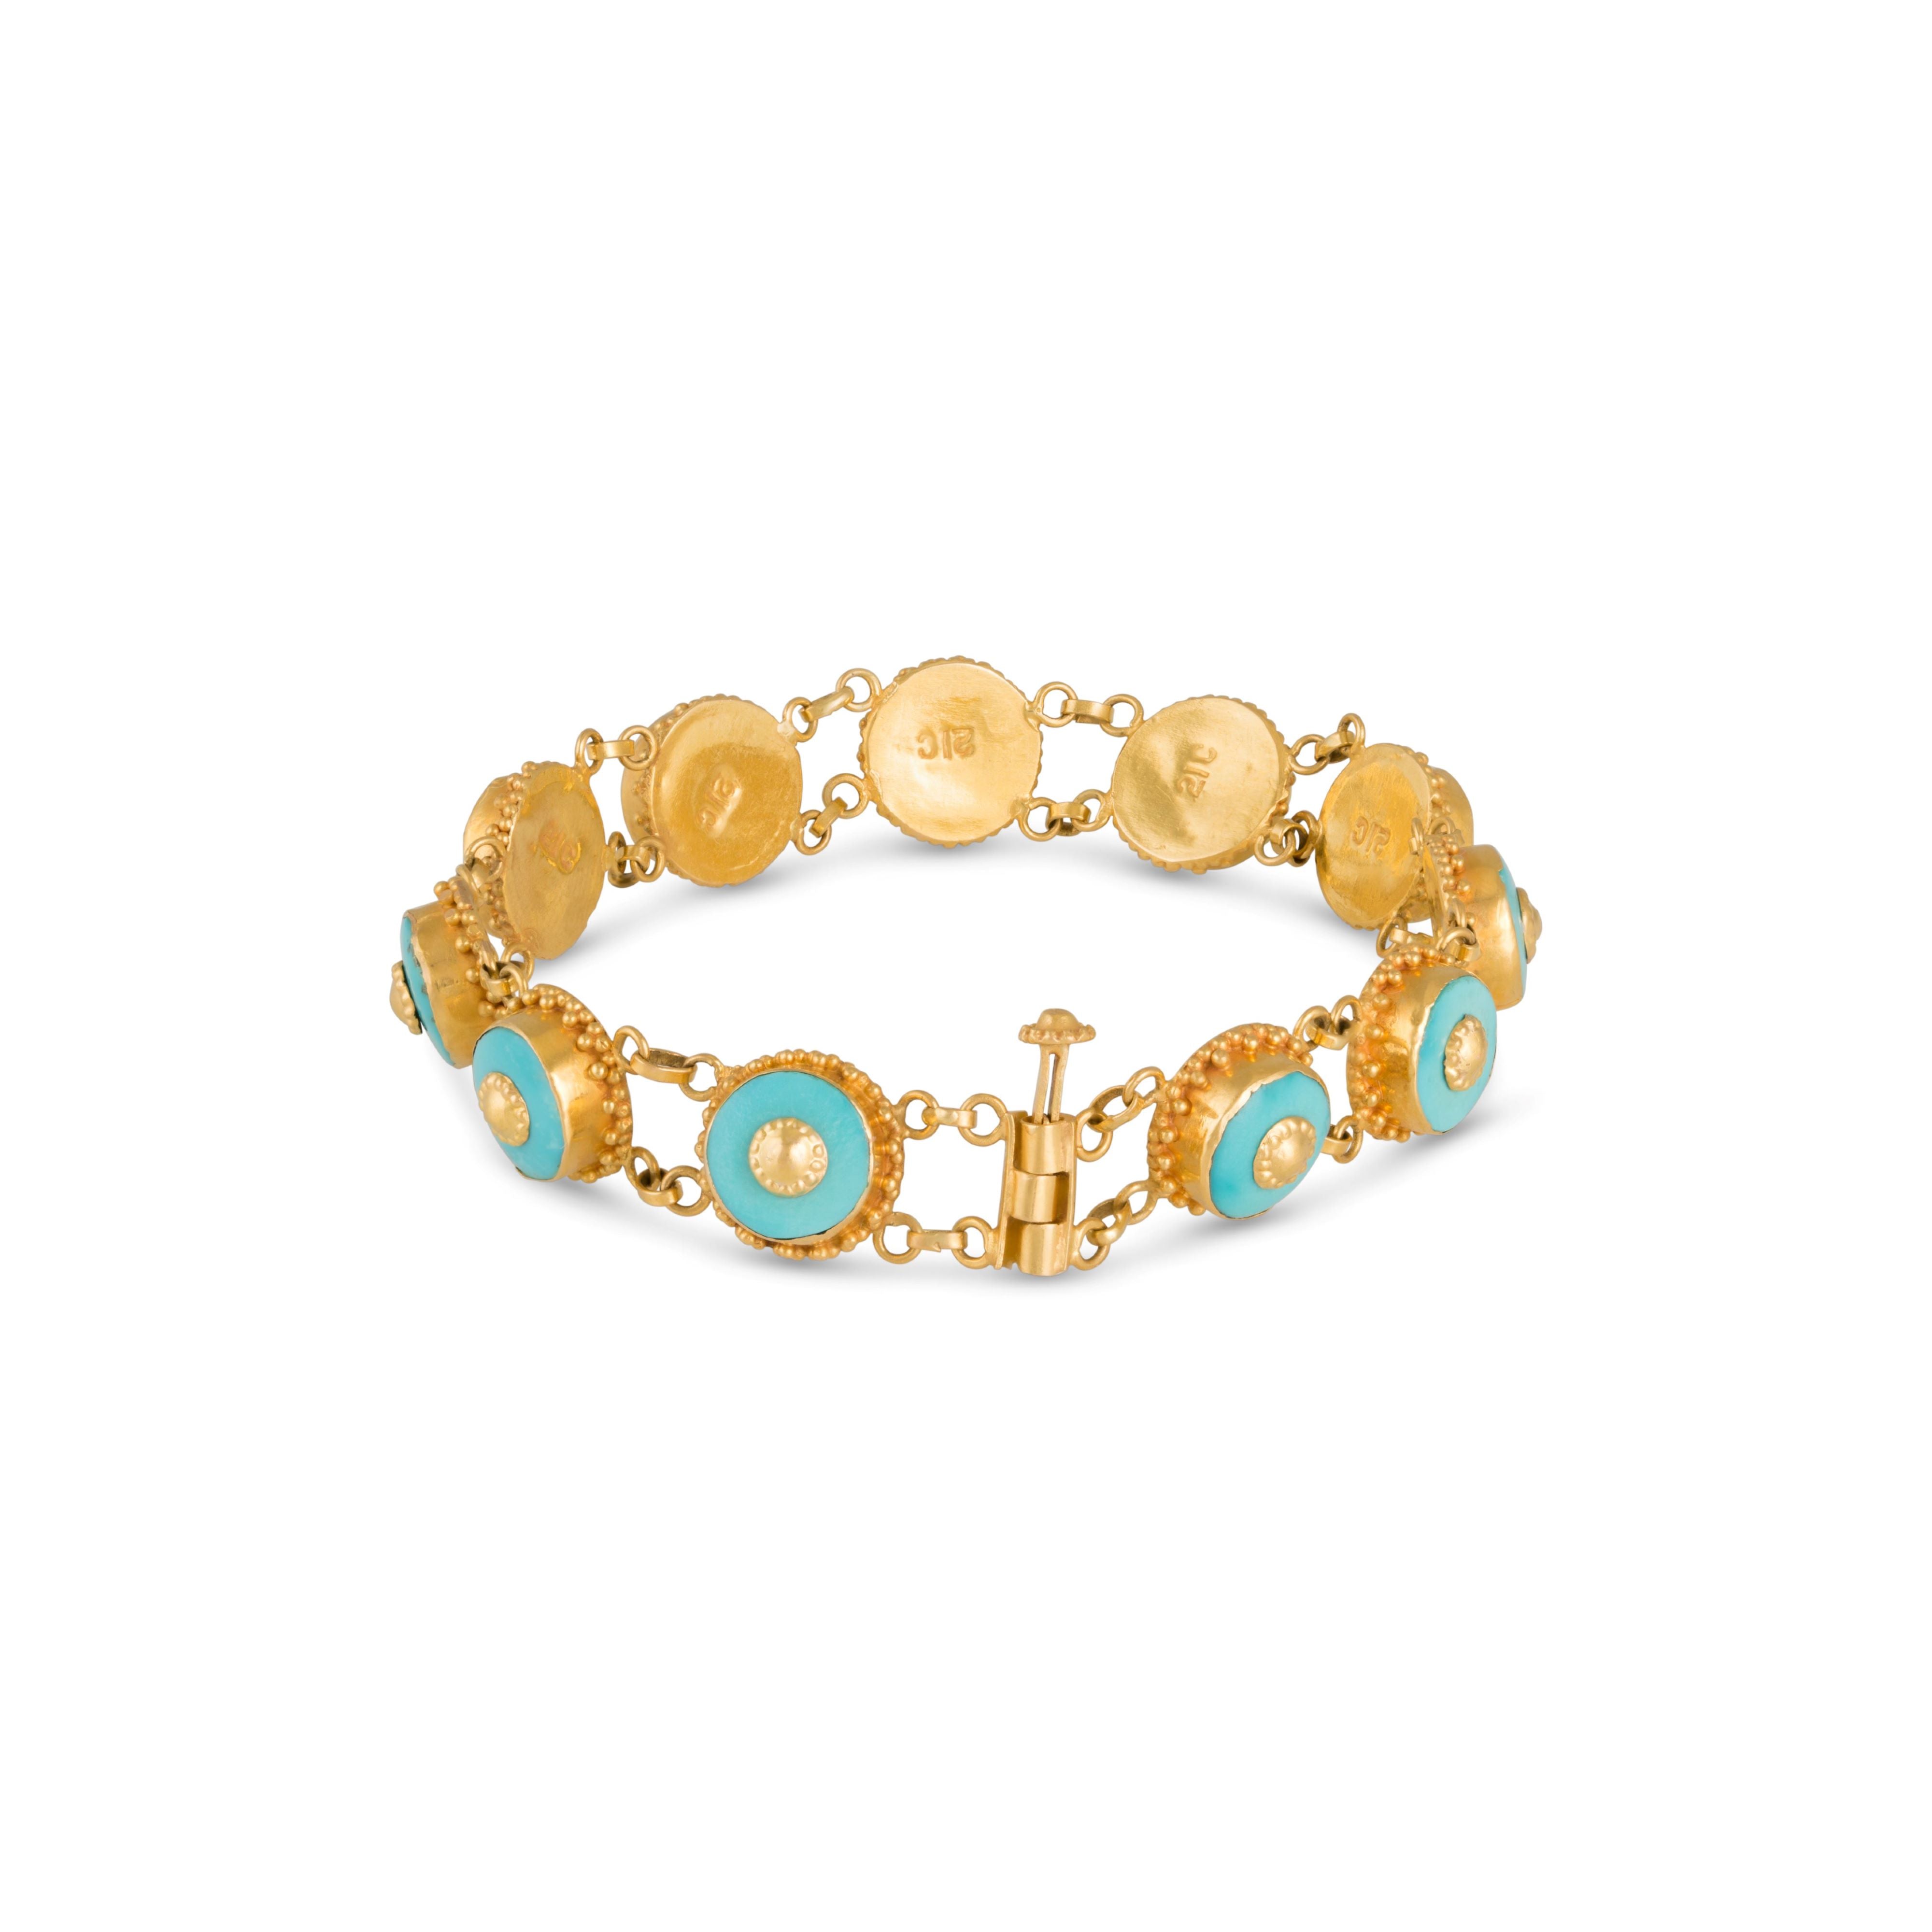 Slide lock on vintage gold and turquoise bracelet. 